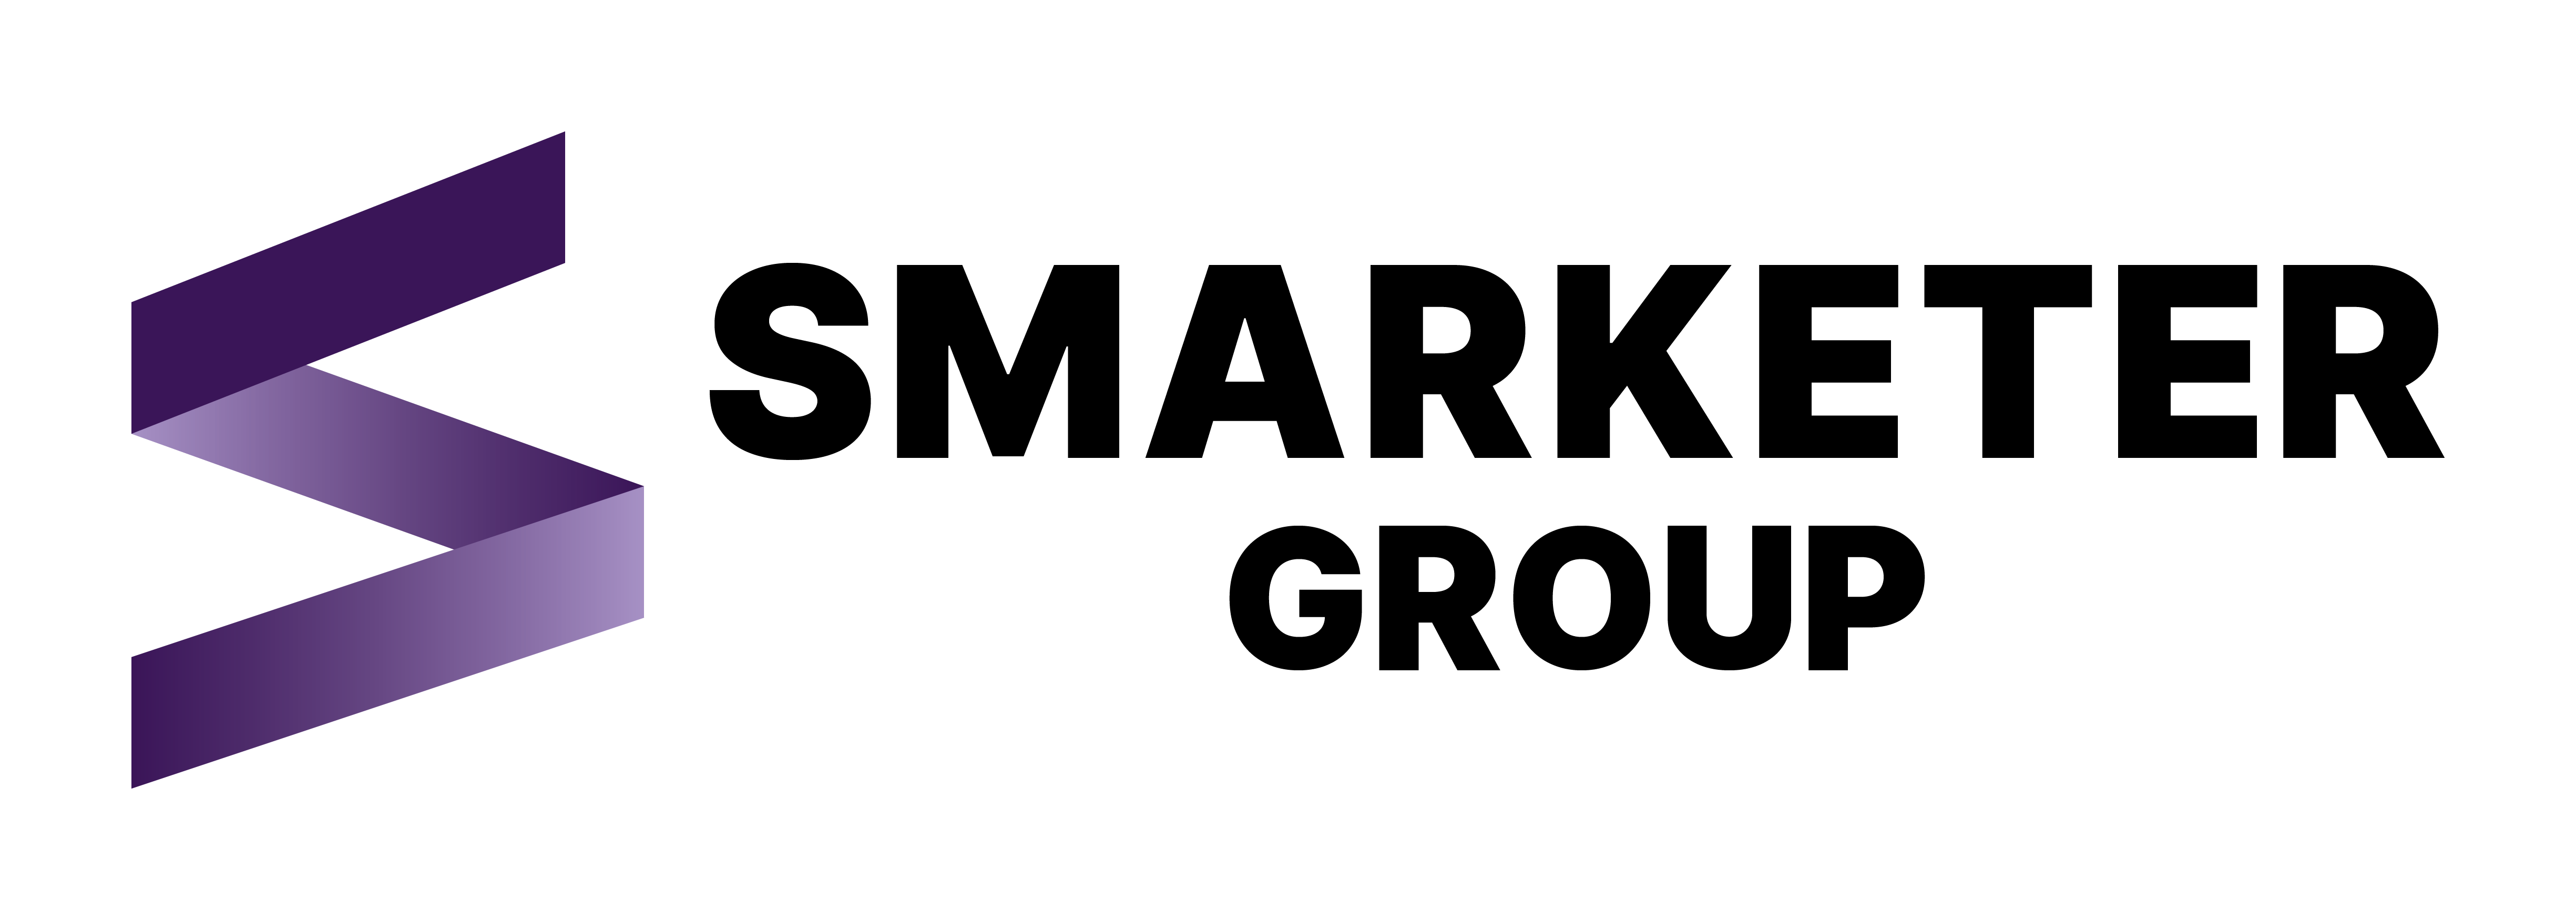 Smarketer_Group_Logo_CMYK_violet_black